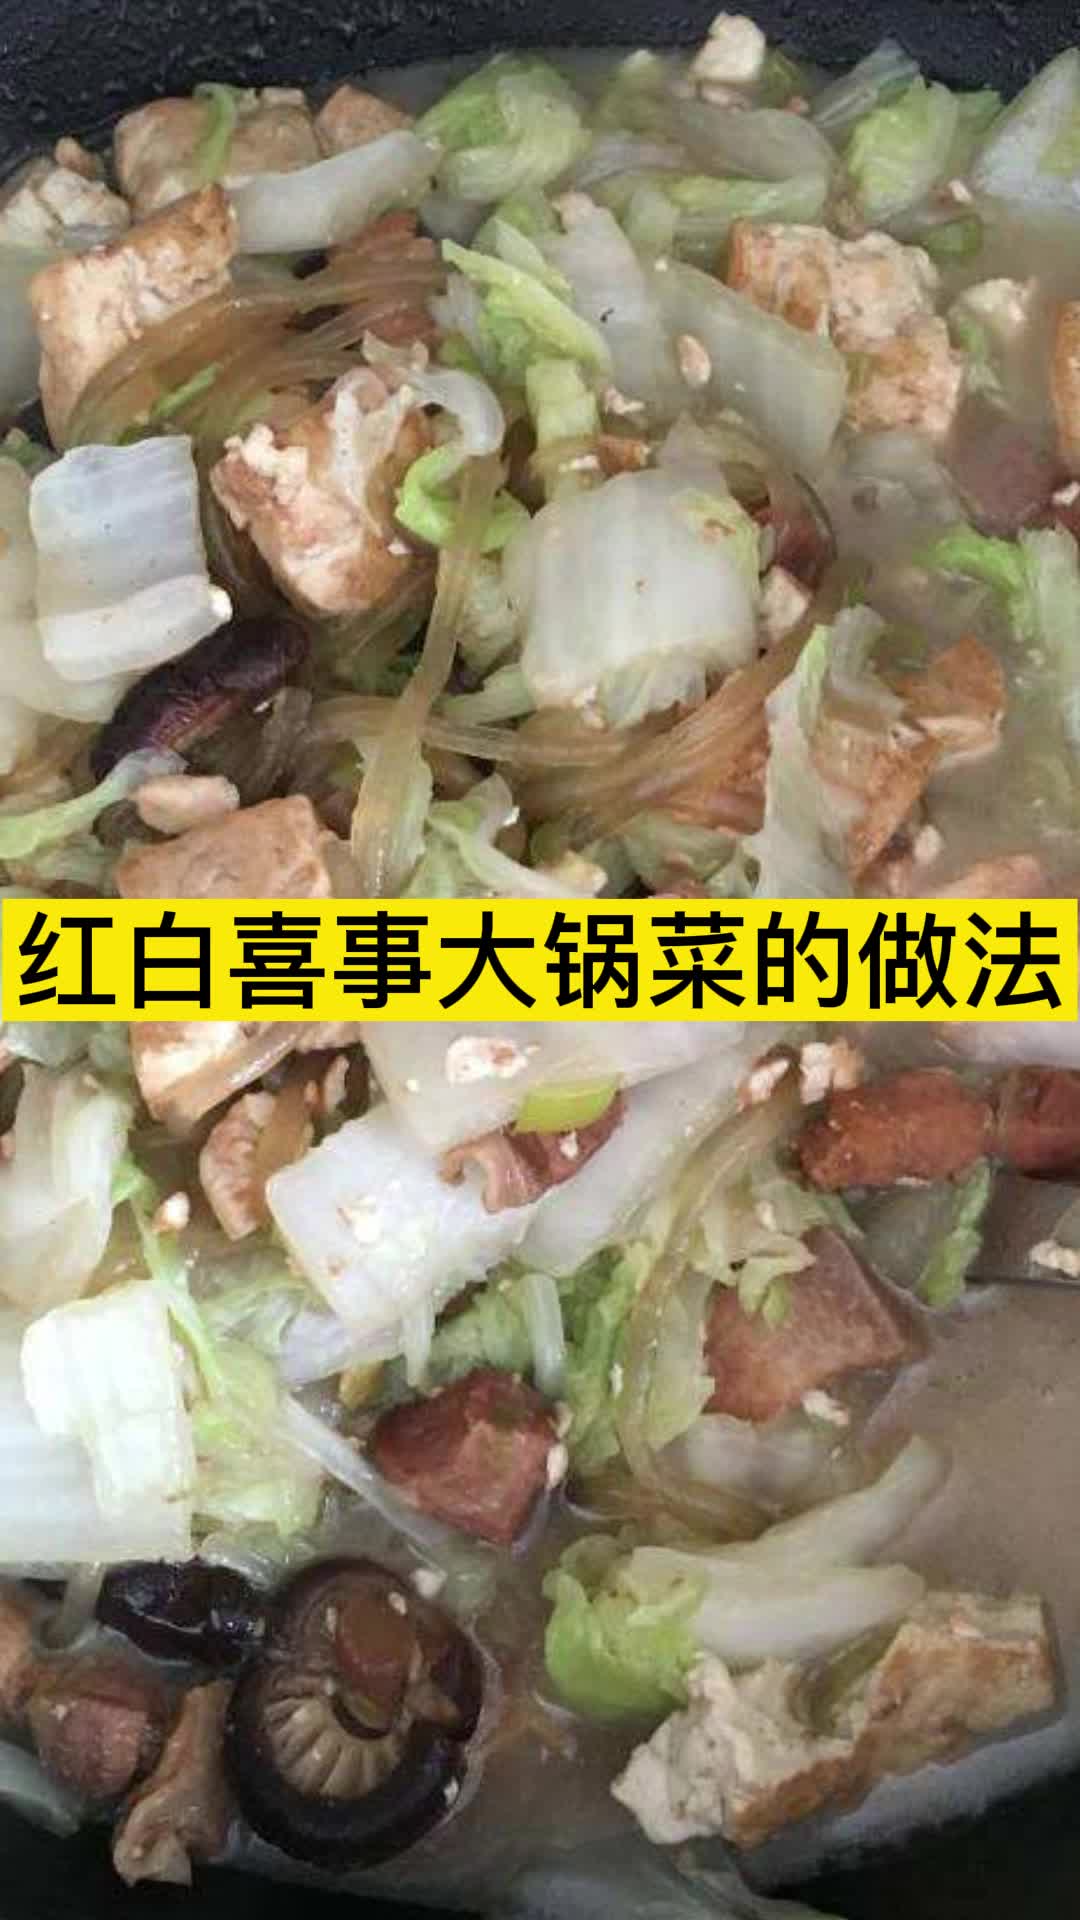 红白喜事大锅菜的做法你清楚了吗